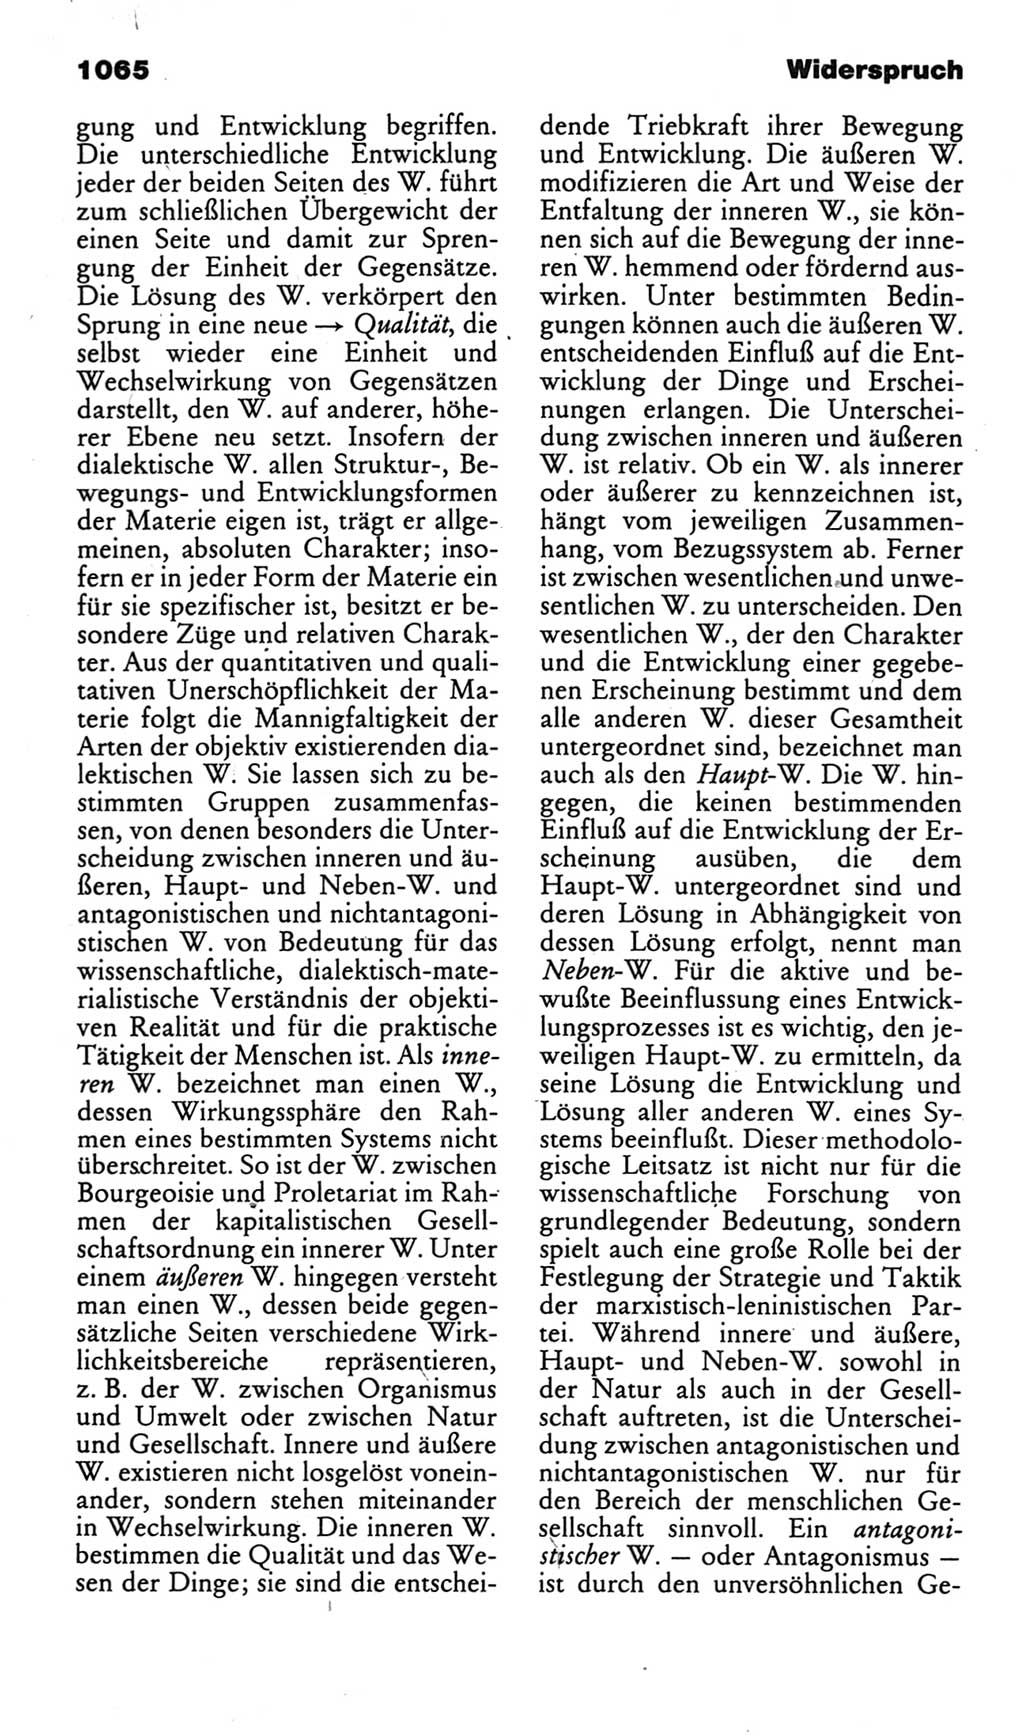 Kleines politisches Wörterbuch [Deutsche Demokratische Republik (DDR)] 1985, Seite 1065 (Kl. pol. Wb. DDR 1985, S. 1065)